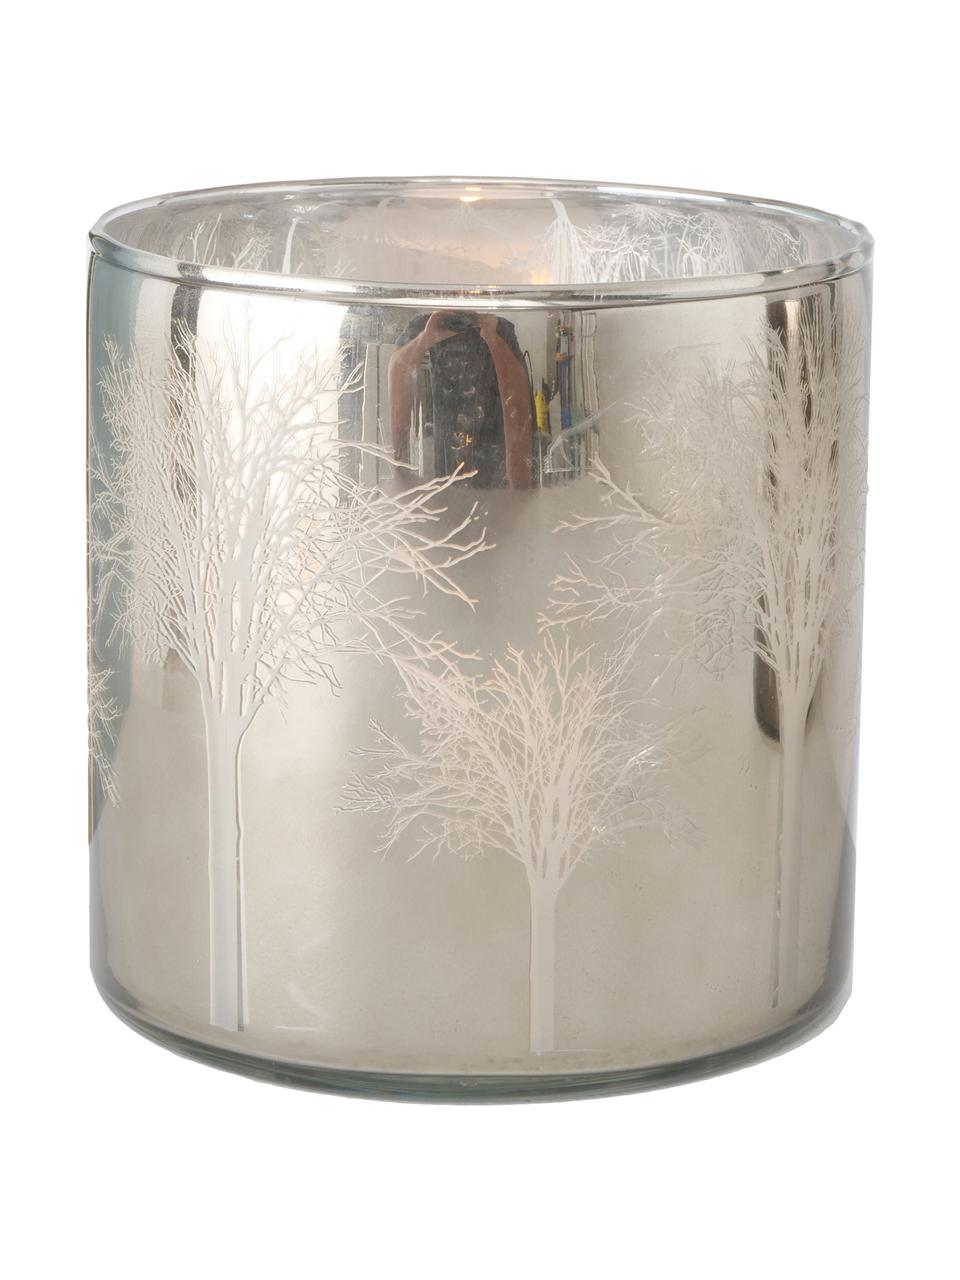 Windlichter-Set Skove, 2-tlg., Glas, lackiert, Silberfarben, Grau, glänzend, Ø 15 x H 15 cm